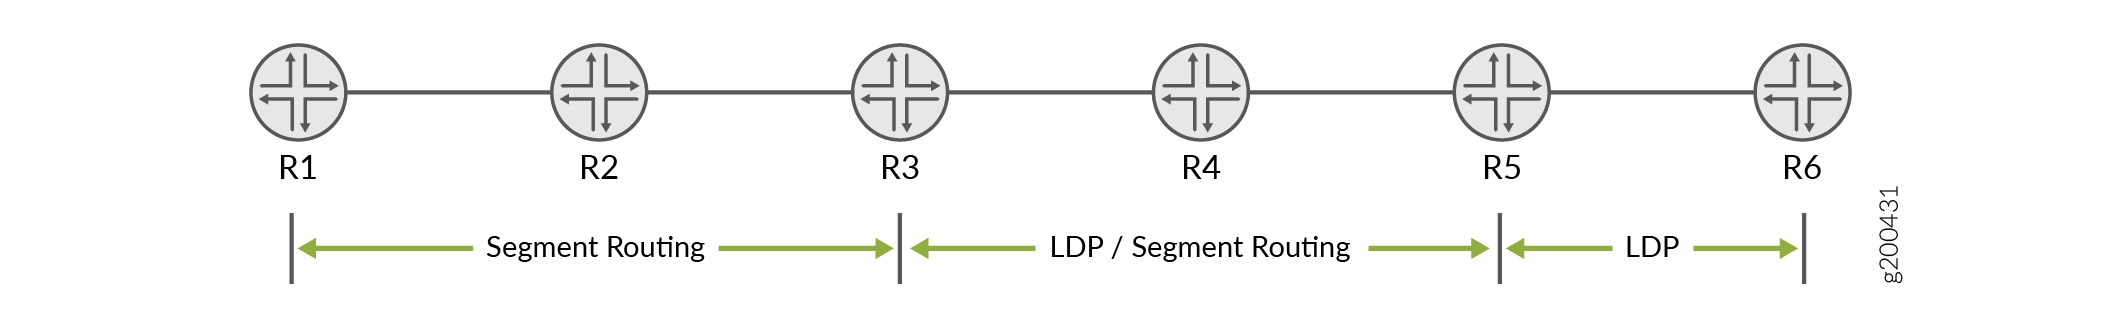 Amostra de topologia de LDP com interoperabilidade do roteamento por segmentos com LDP usando OSPF